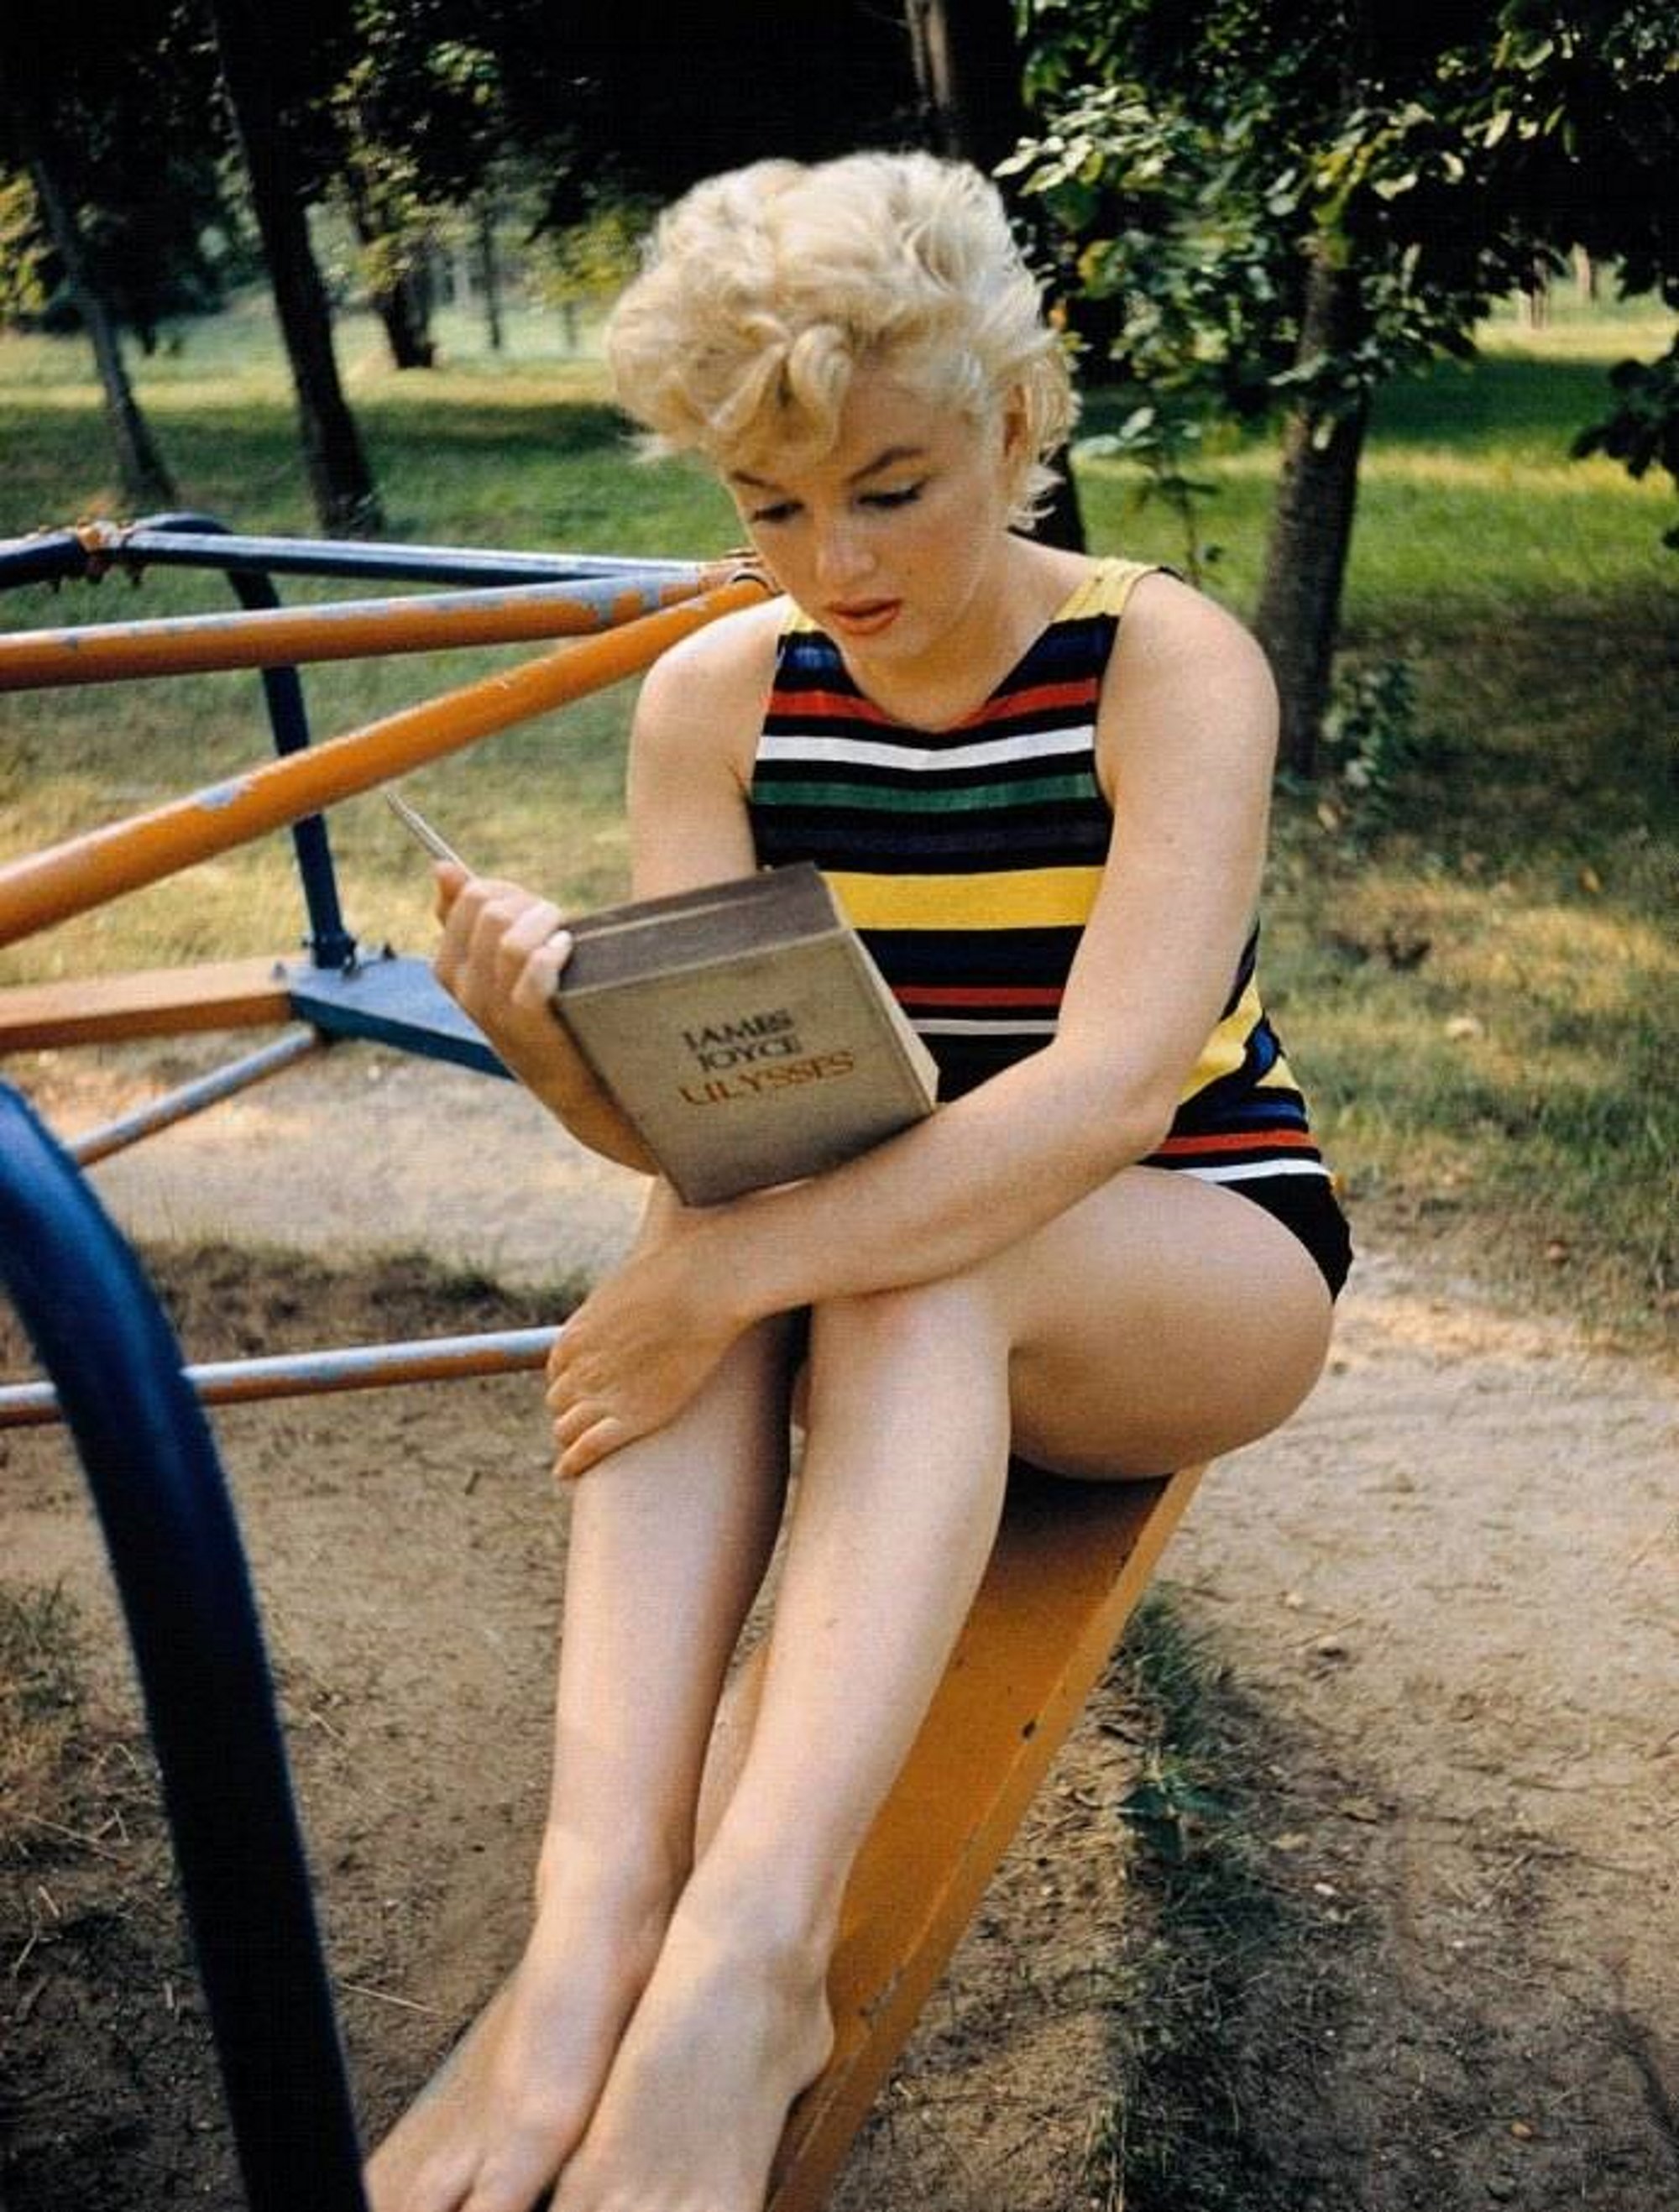 Hay una nueva teoría sobre la muerte de Marilyn Monroe